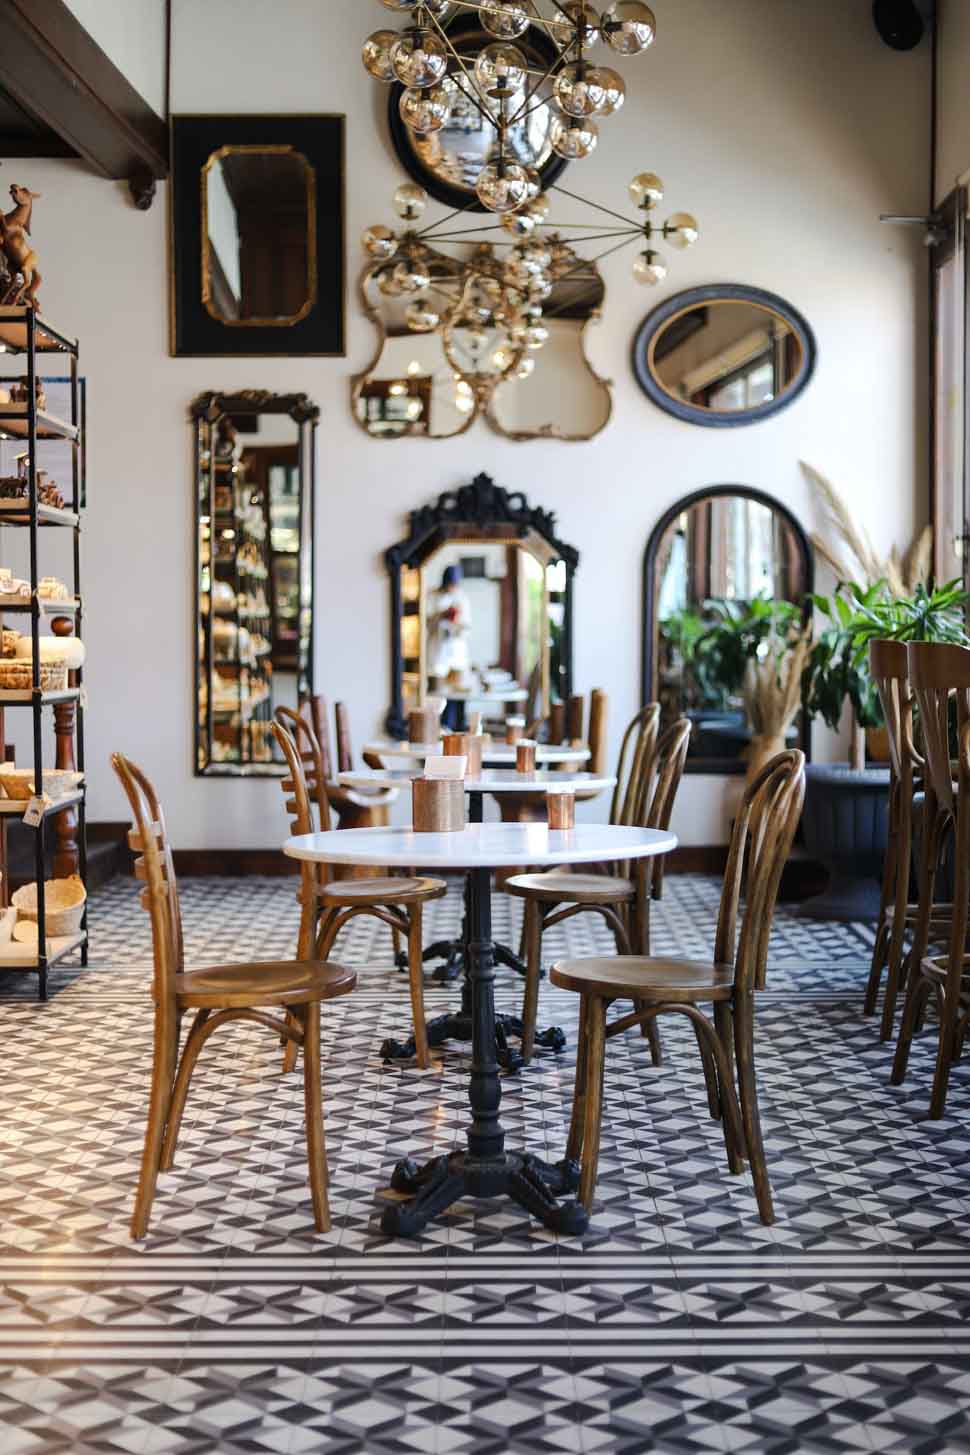 Quán cafe phong cách Pháp với đèn chùm, gương, Hoa văn điêu khắc, bàn ghế gỗ...